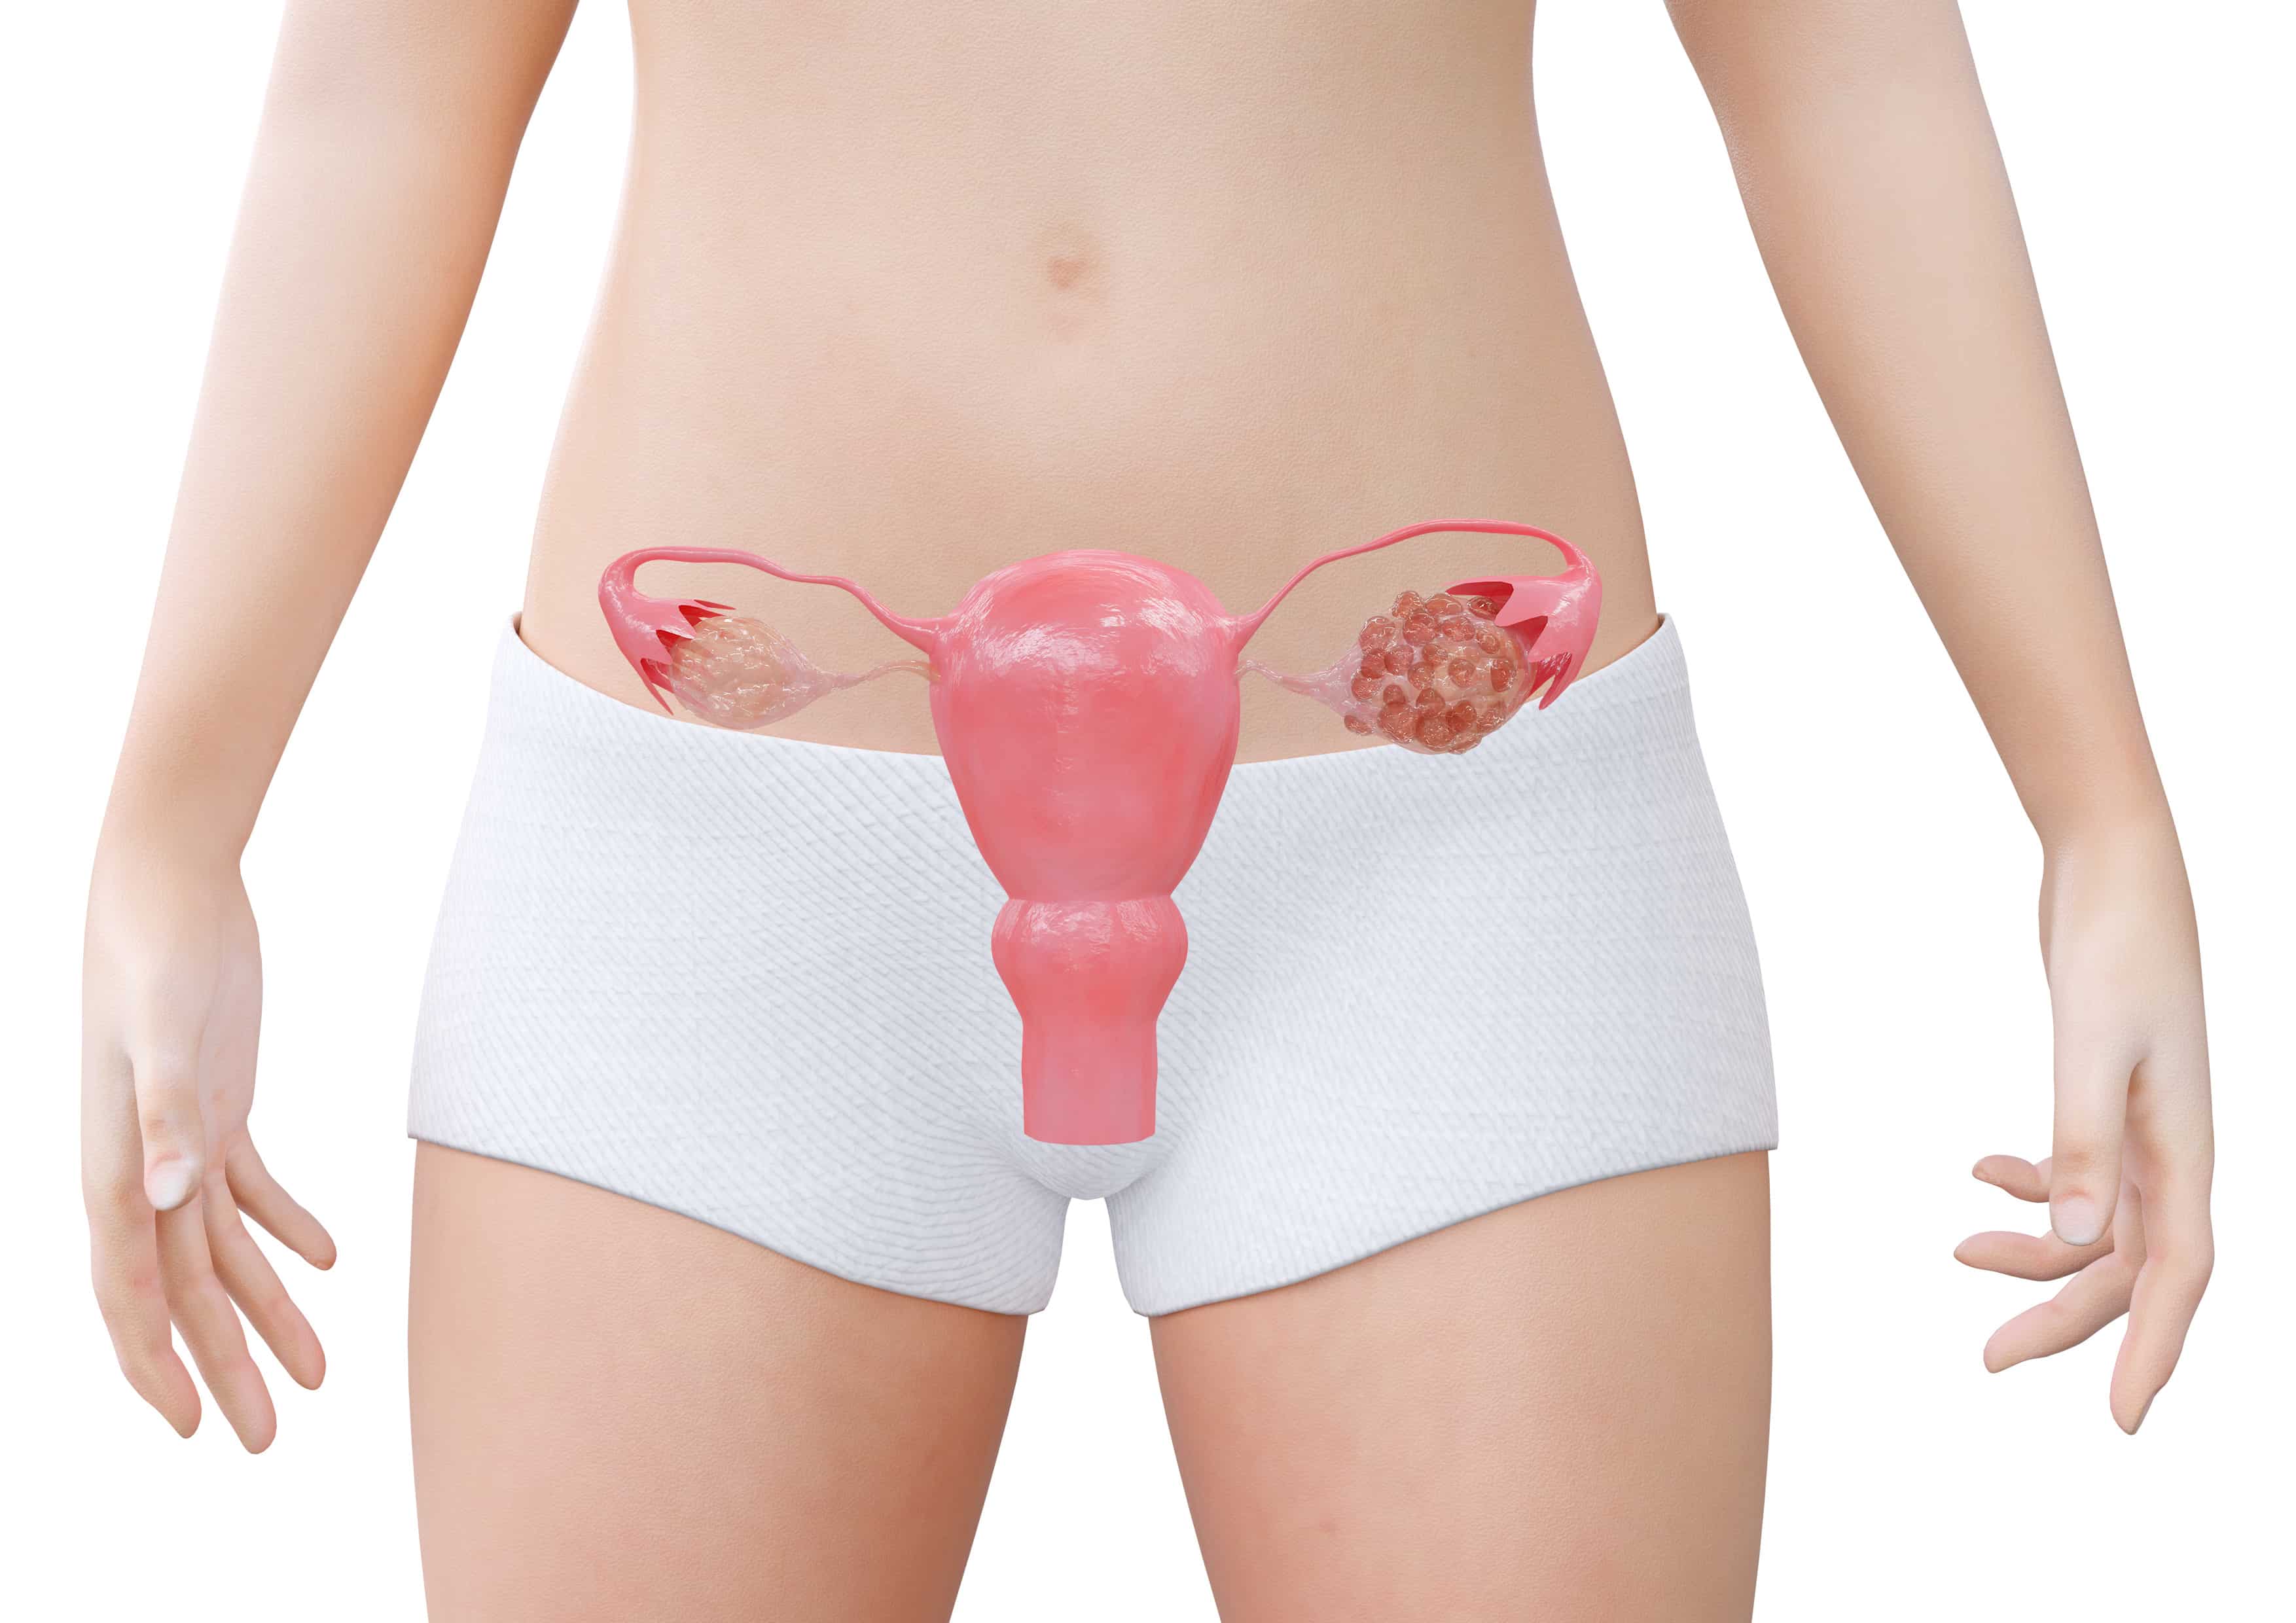 Menstruação irregular? Confira 10 causas e 5 soluções para o problema